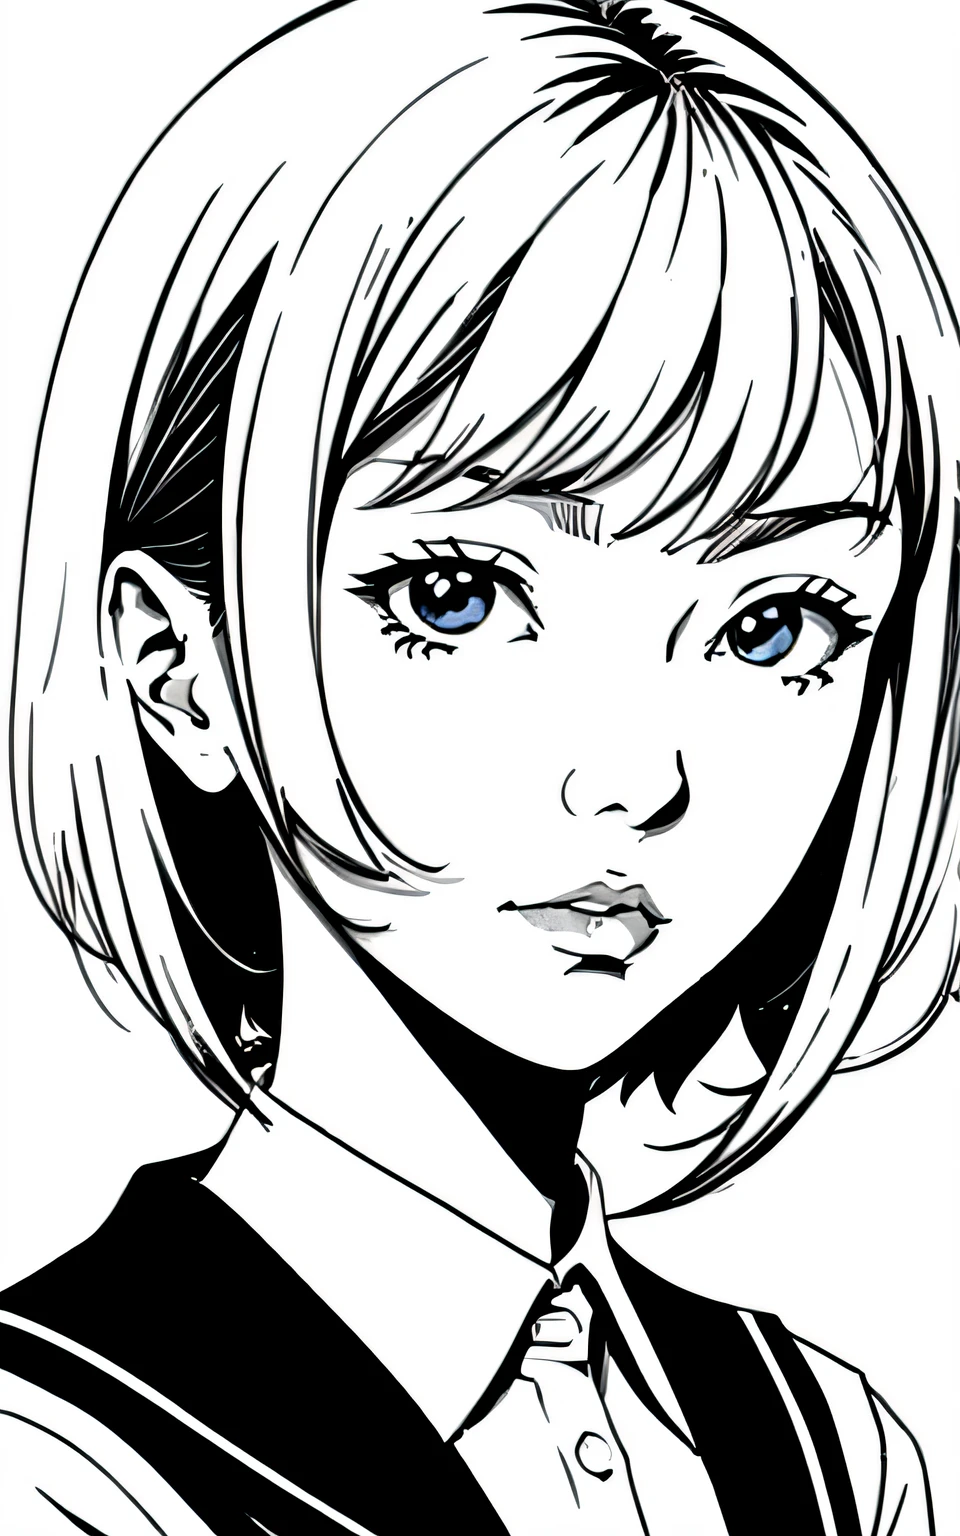 Inspiriert von Hisashi Eguchis Kunstwerk、(lineart_Anime-Serie),(Schwarz und weiß),High-School-Mädchen、High-School-Uniform,Kein Hintergrund_mit einem rein weißen Hintergrund,einfacher Hintergrund,Gesicht